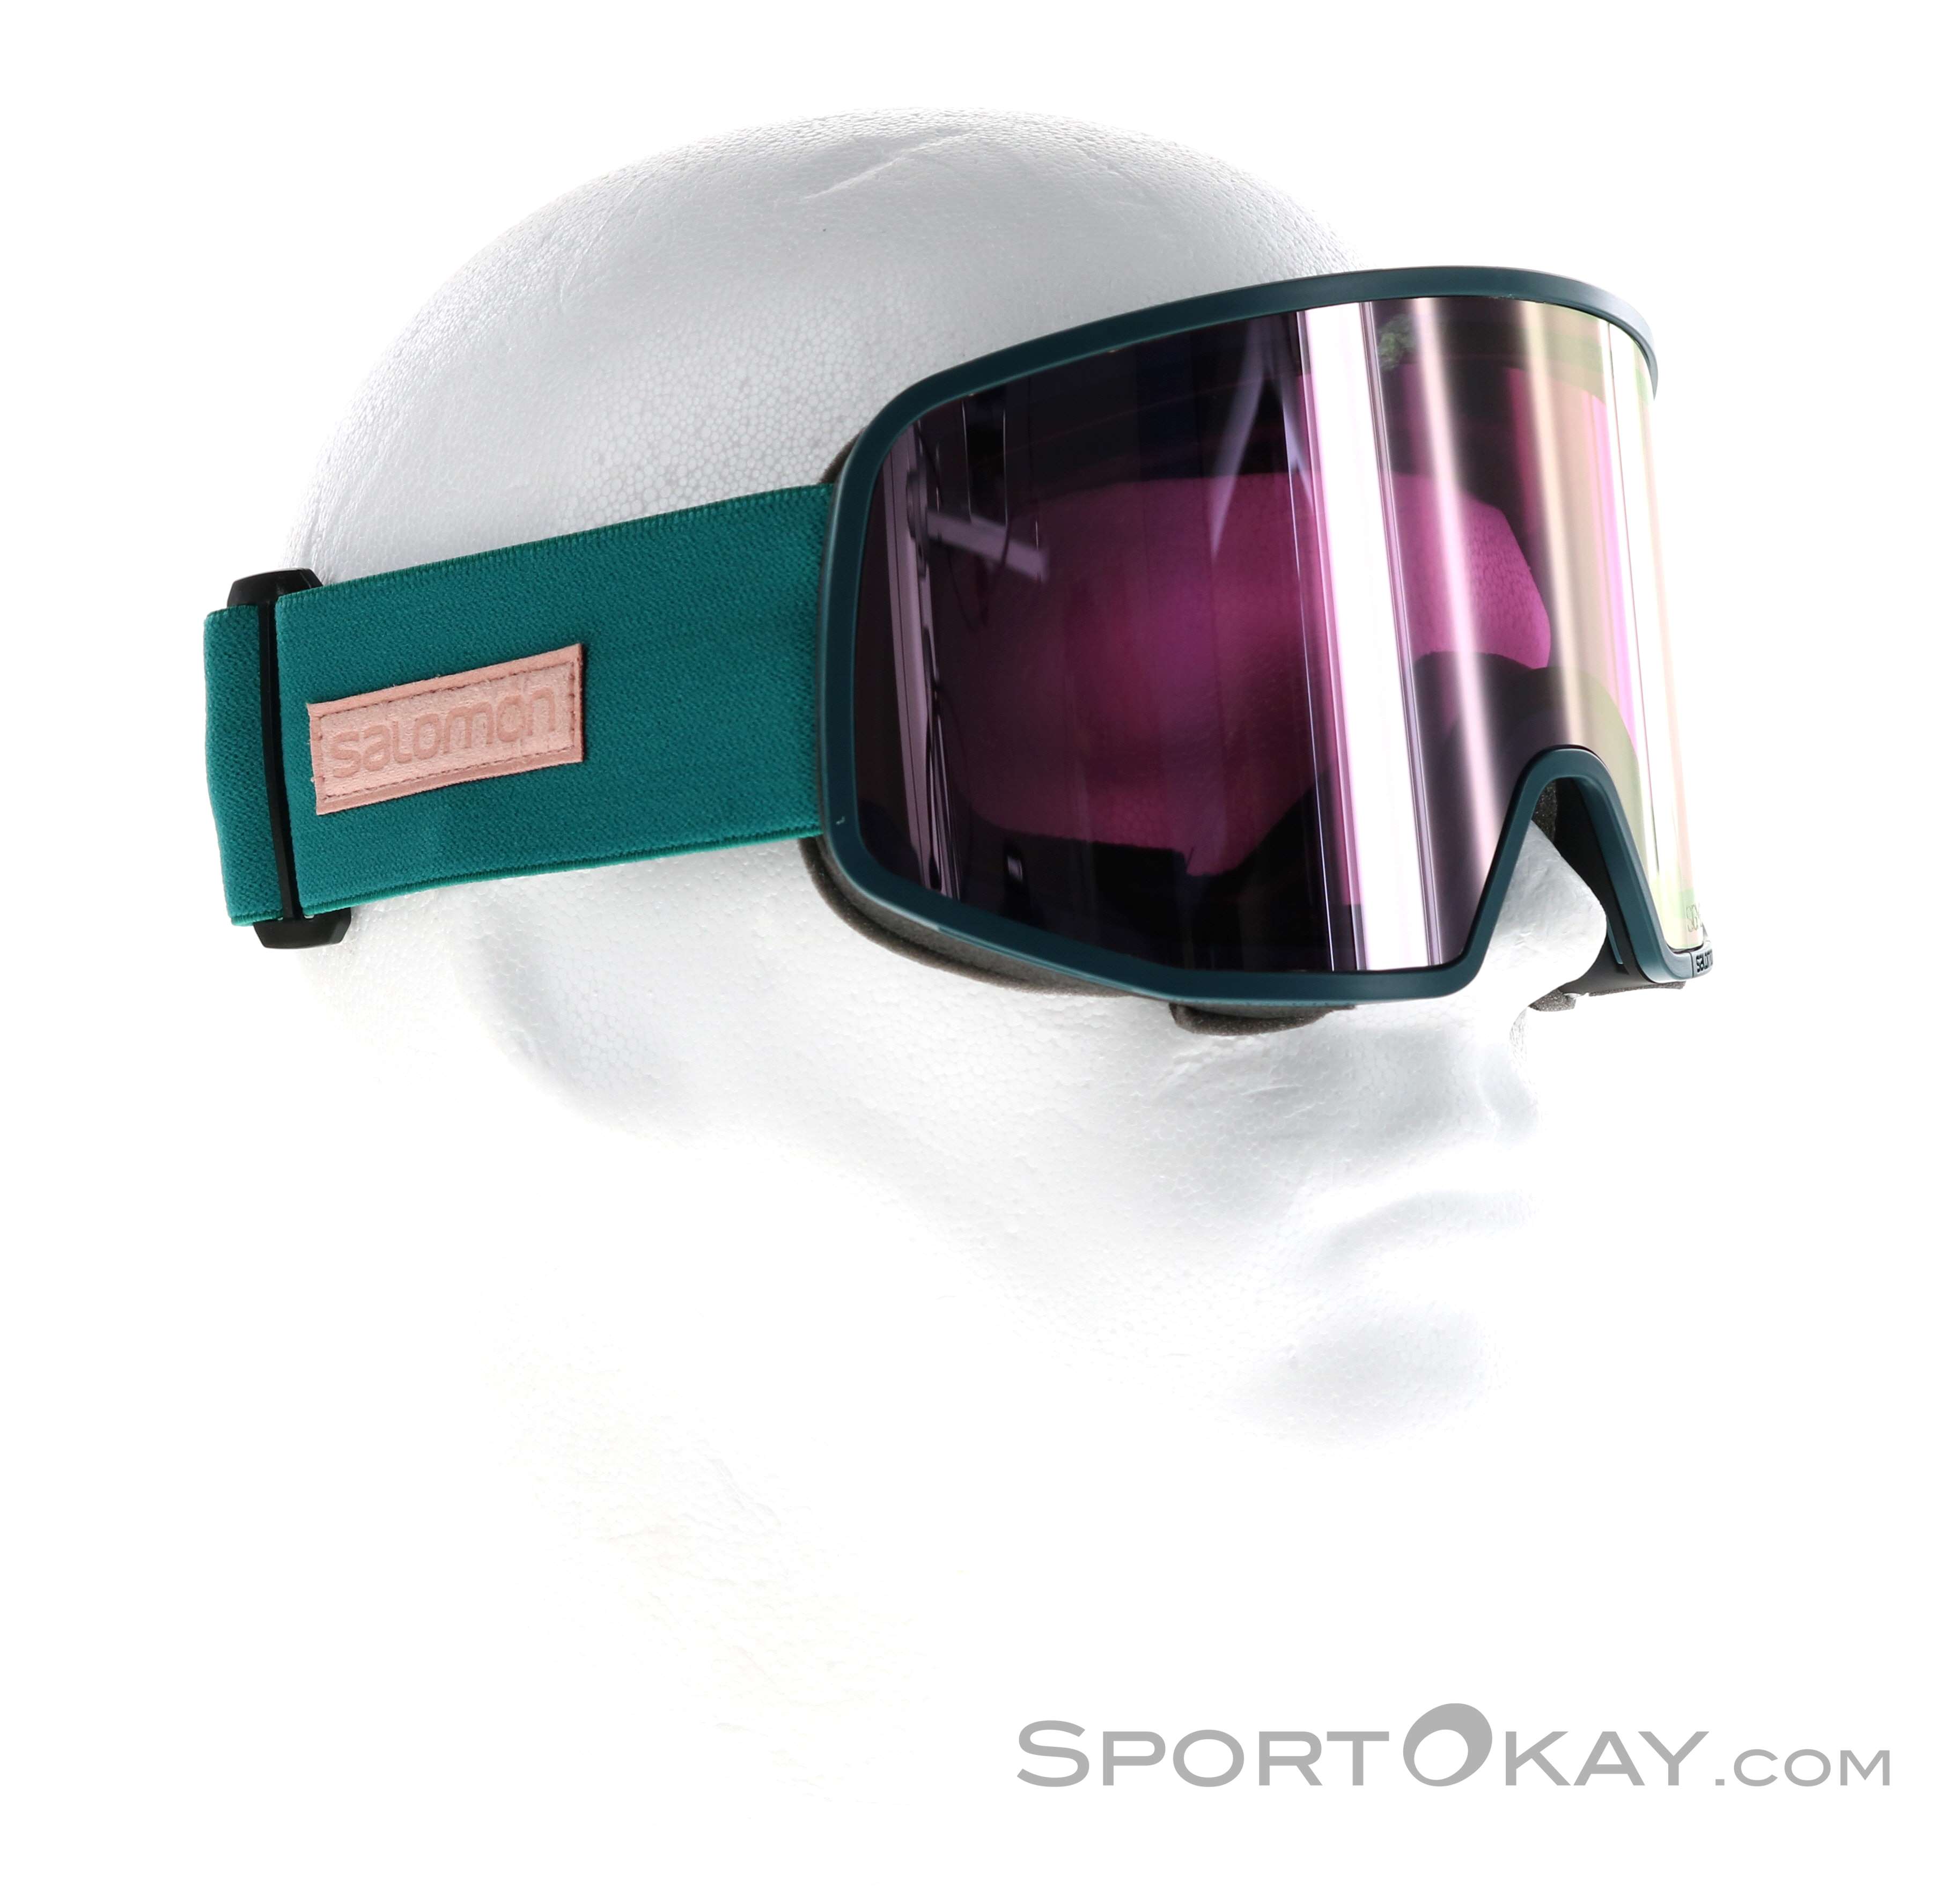 Enrichment Friend skate Salomon Lo Fi Sigma Ski Goggles - Ski Googles - Glasses - Ski Touring - All